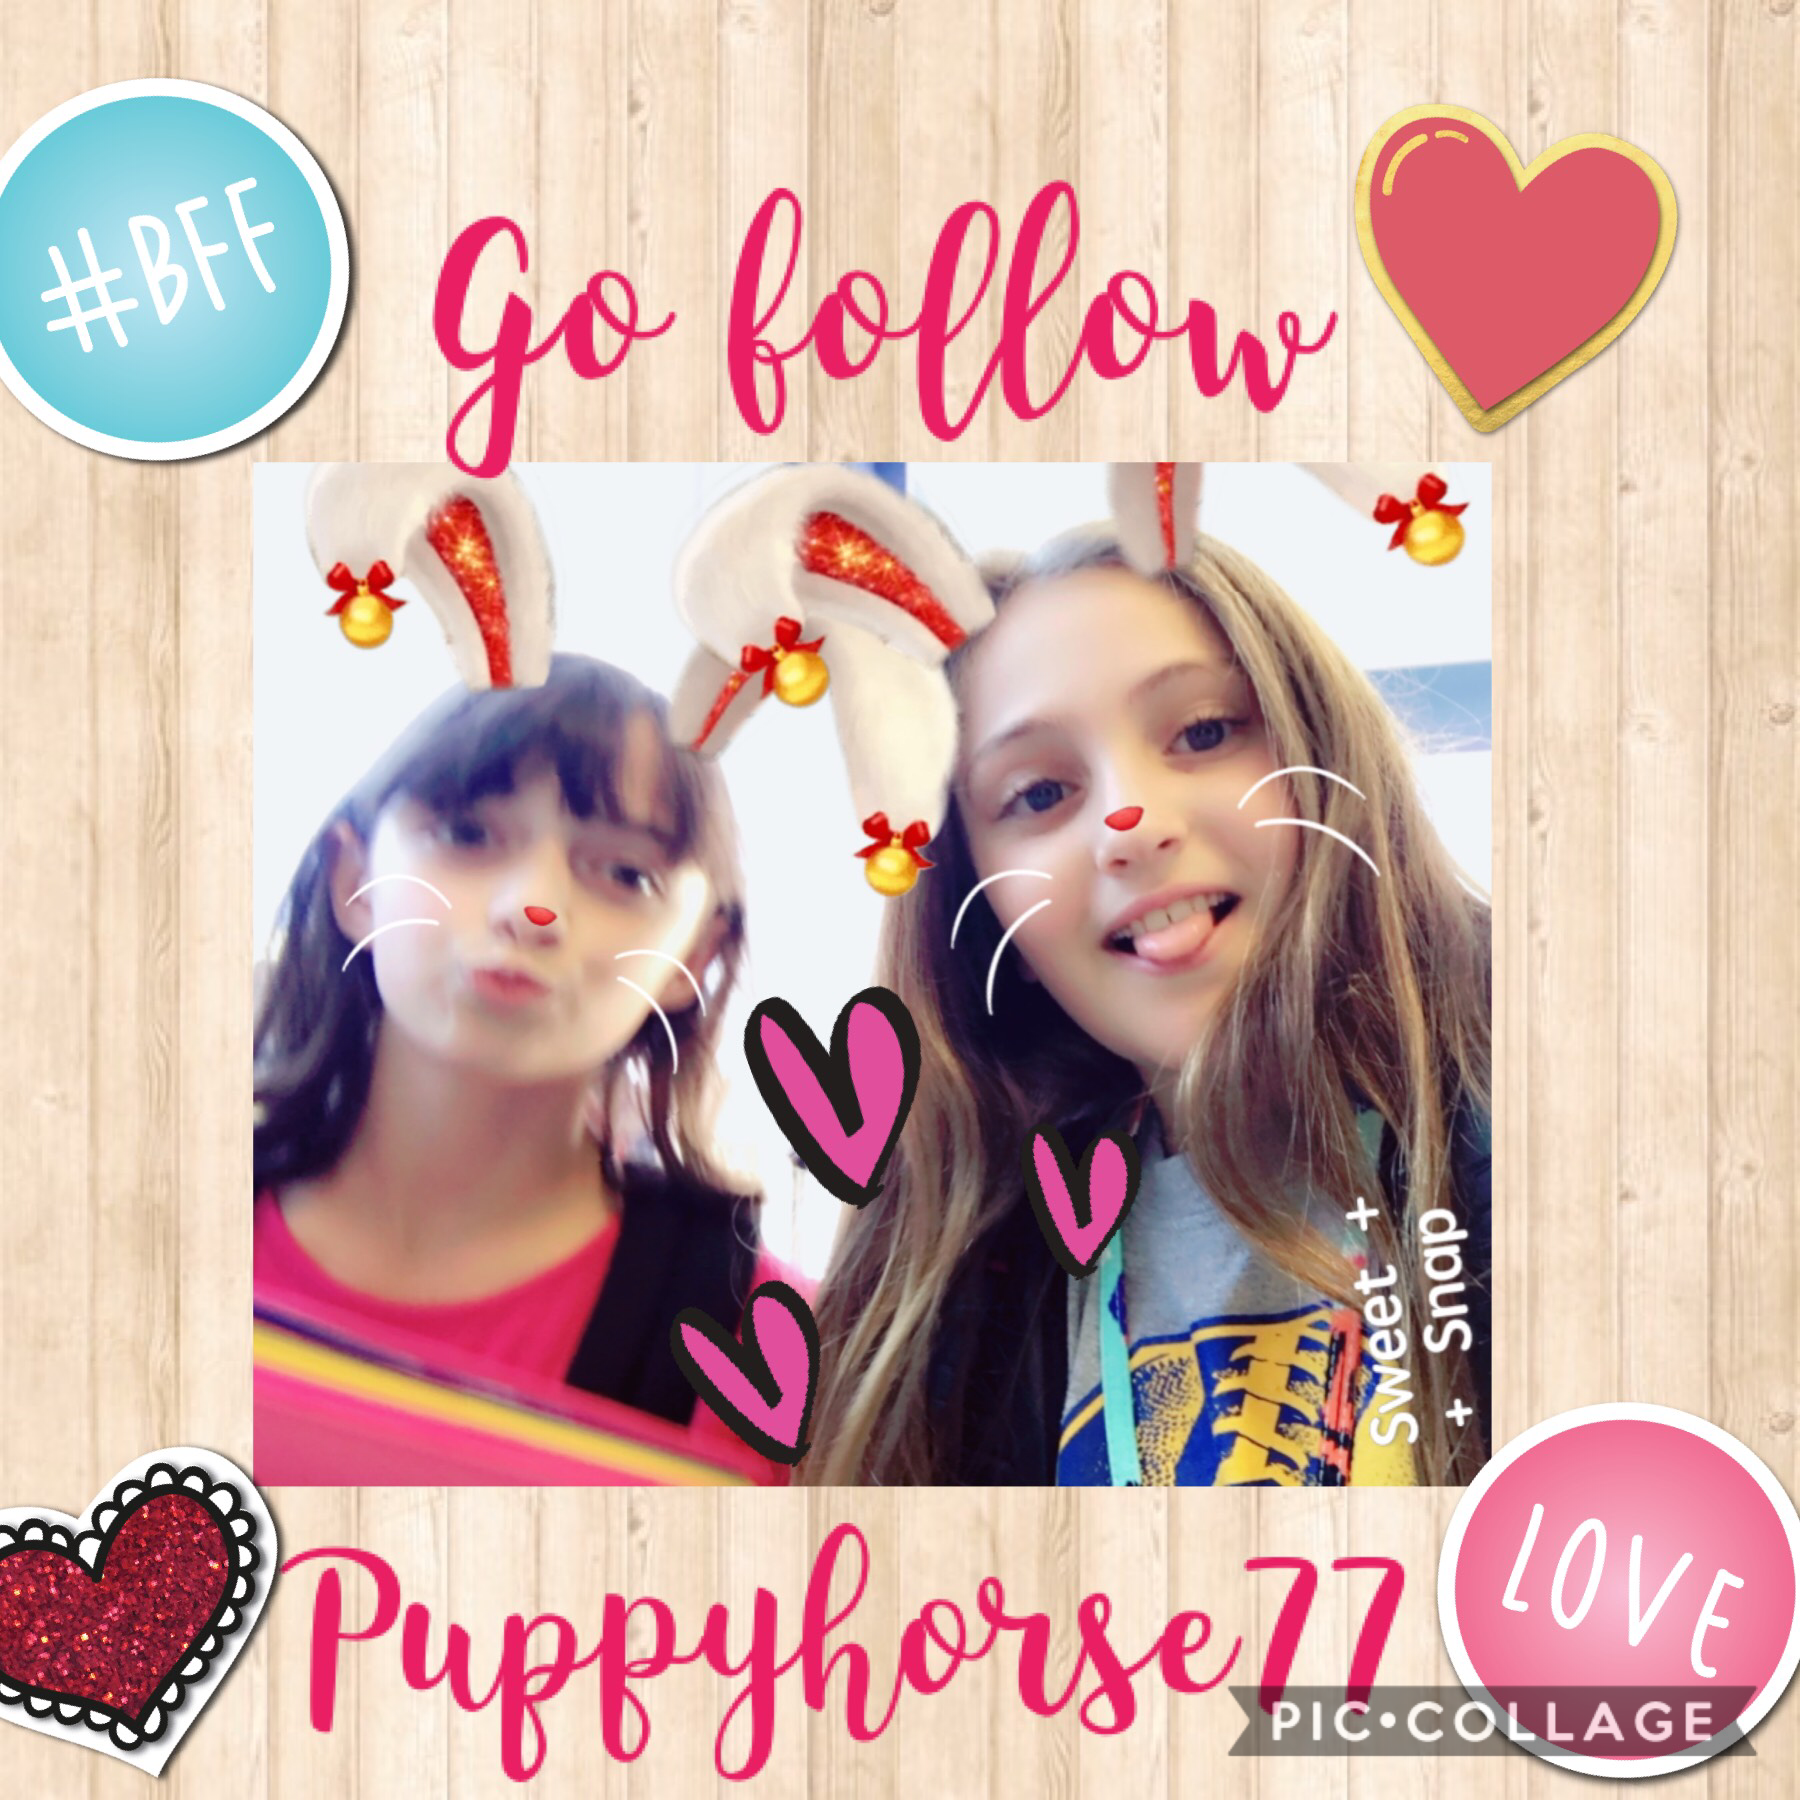 PLEASE go follow puppyhorse77